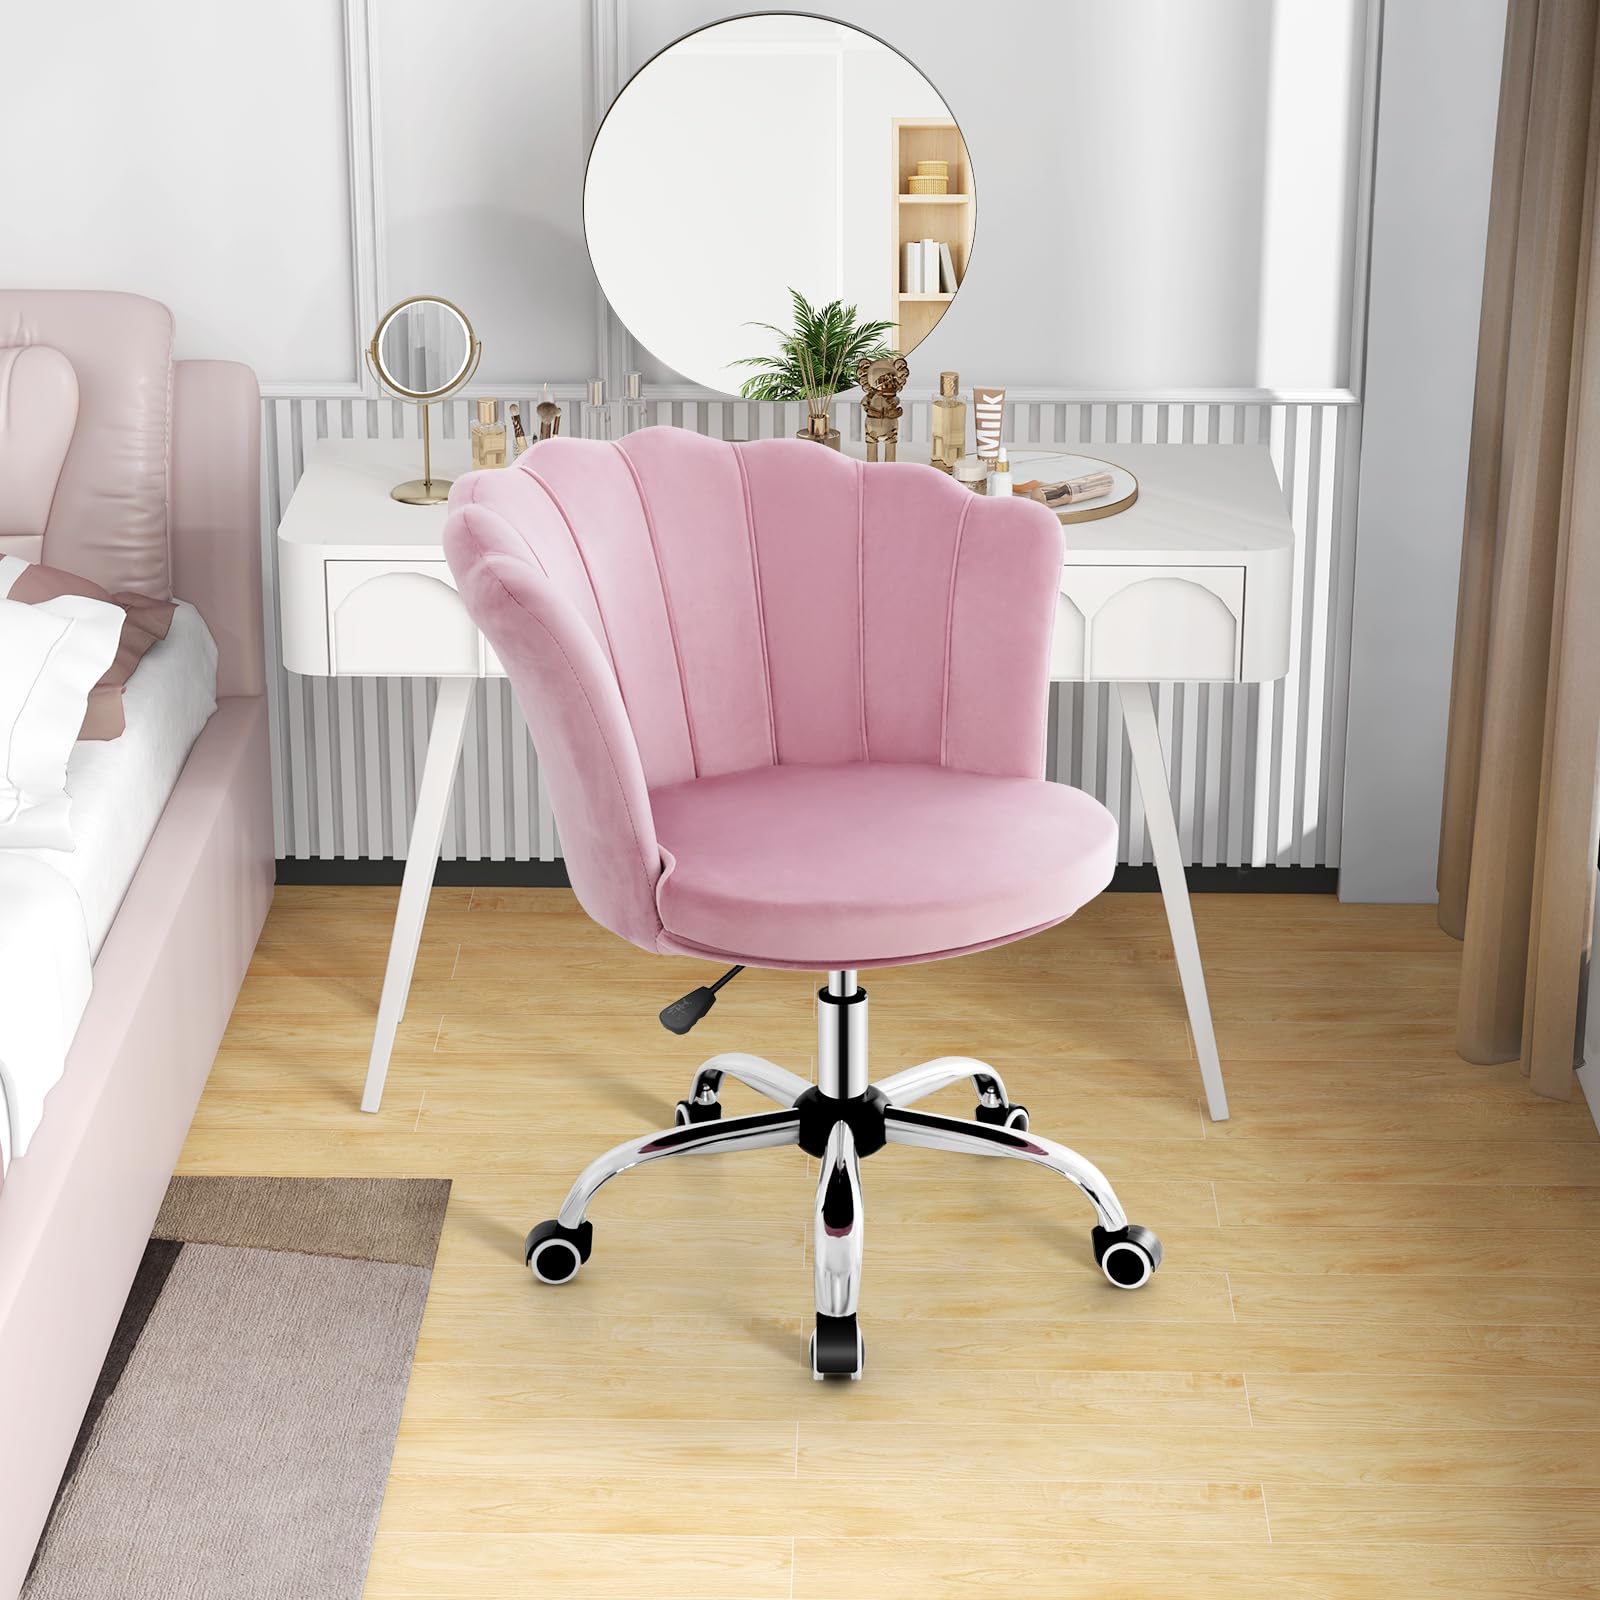 Giantex Velvet Office Desk Chair Pink